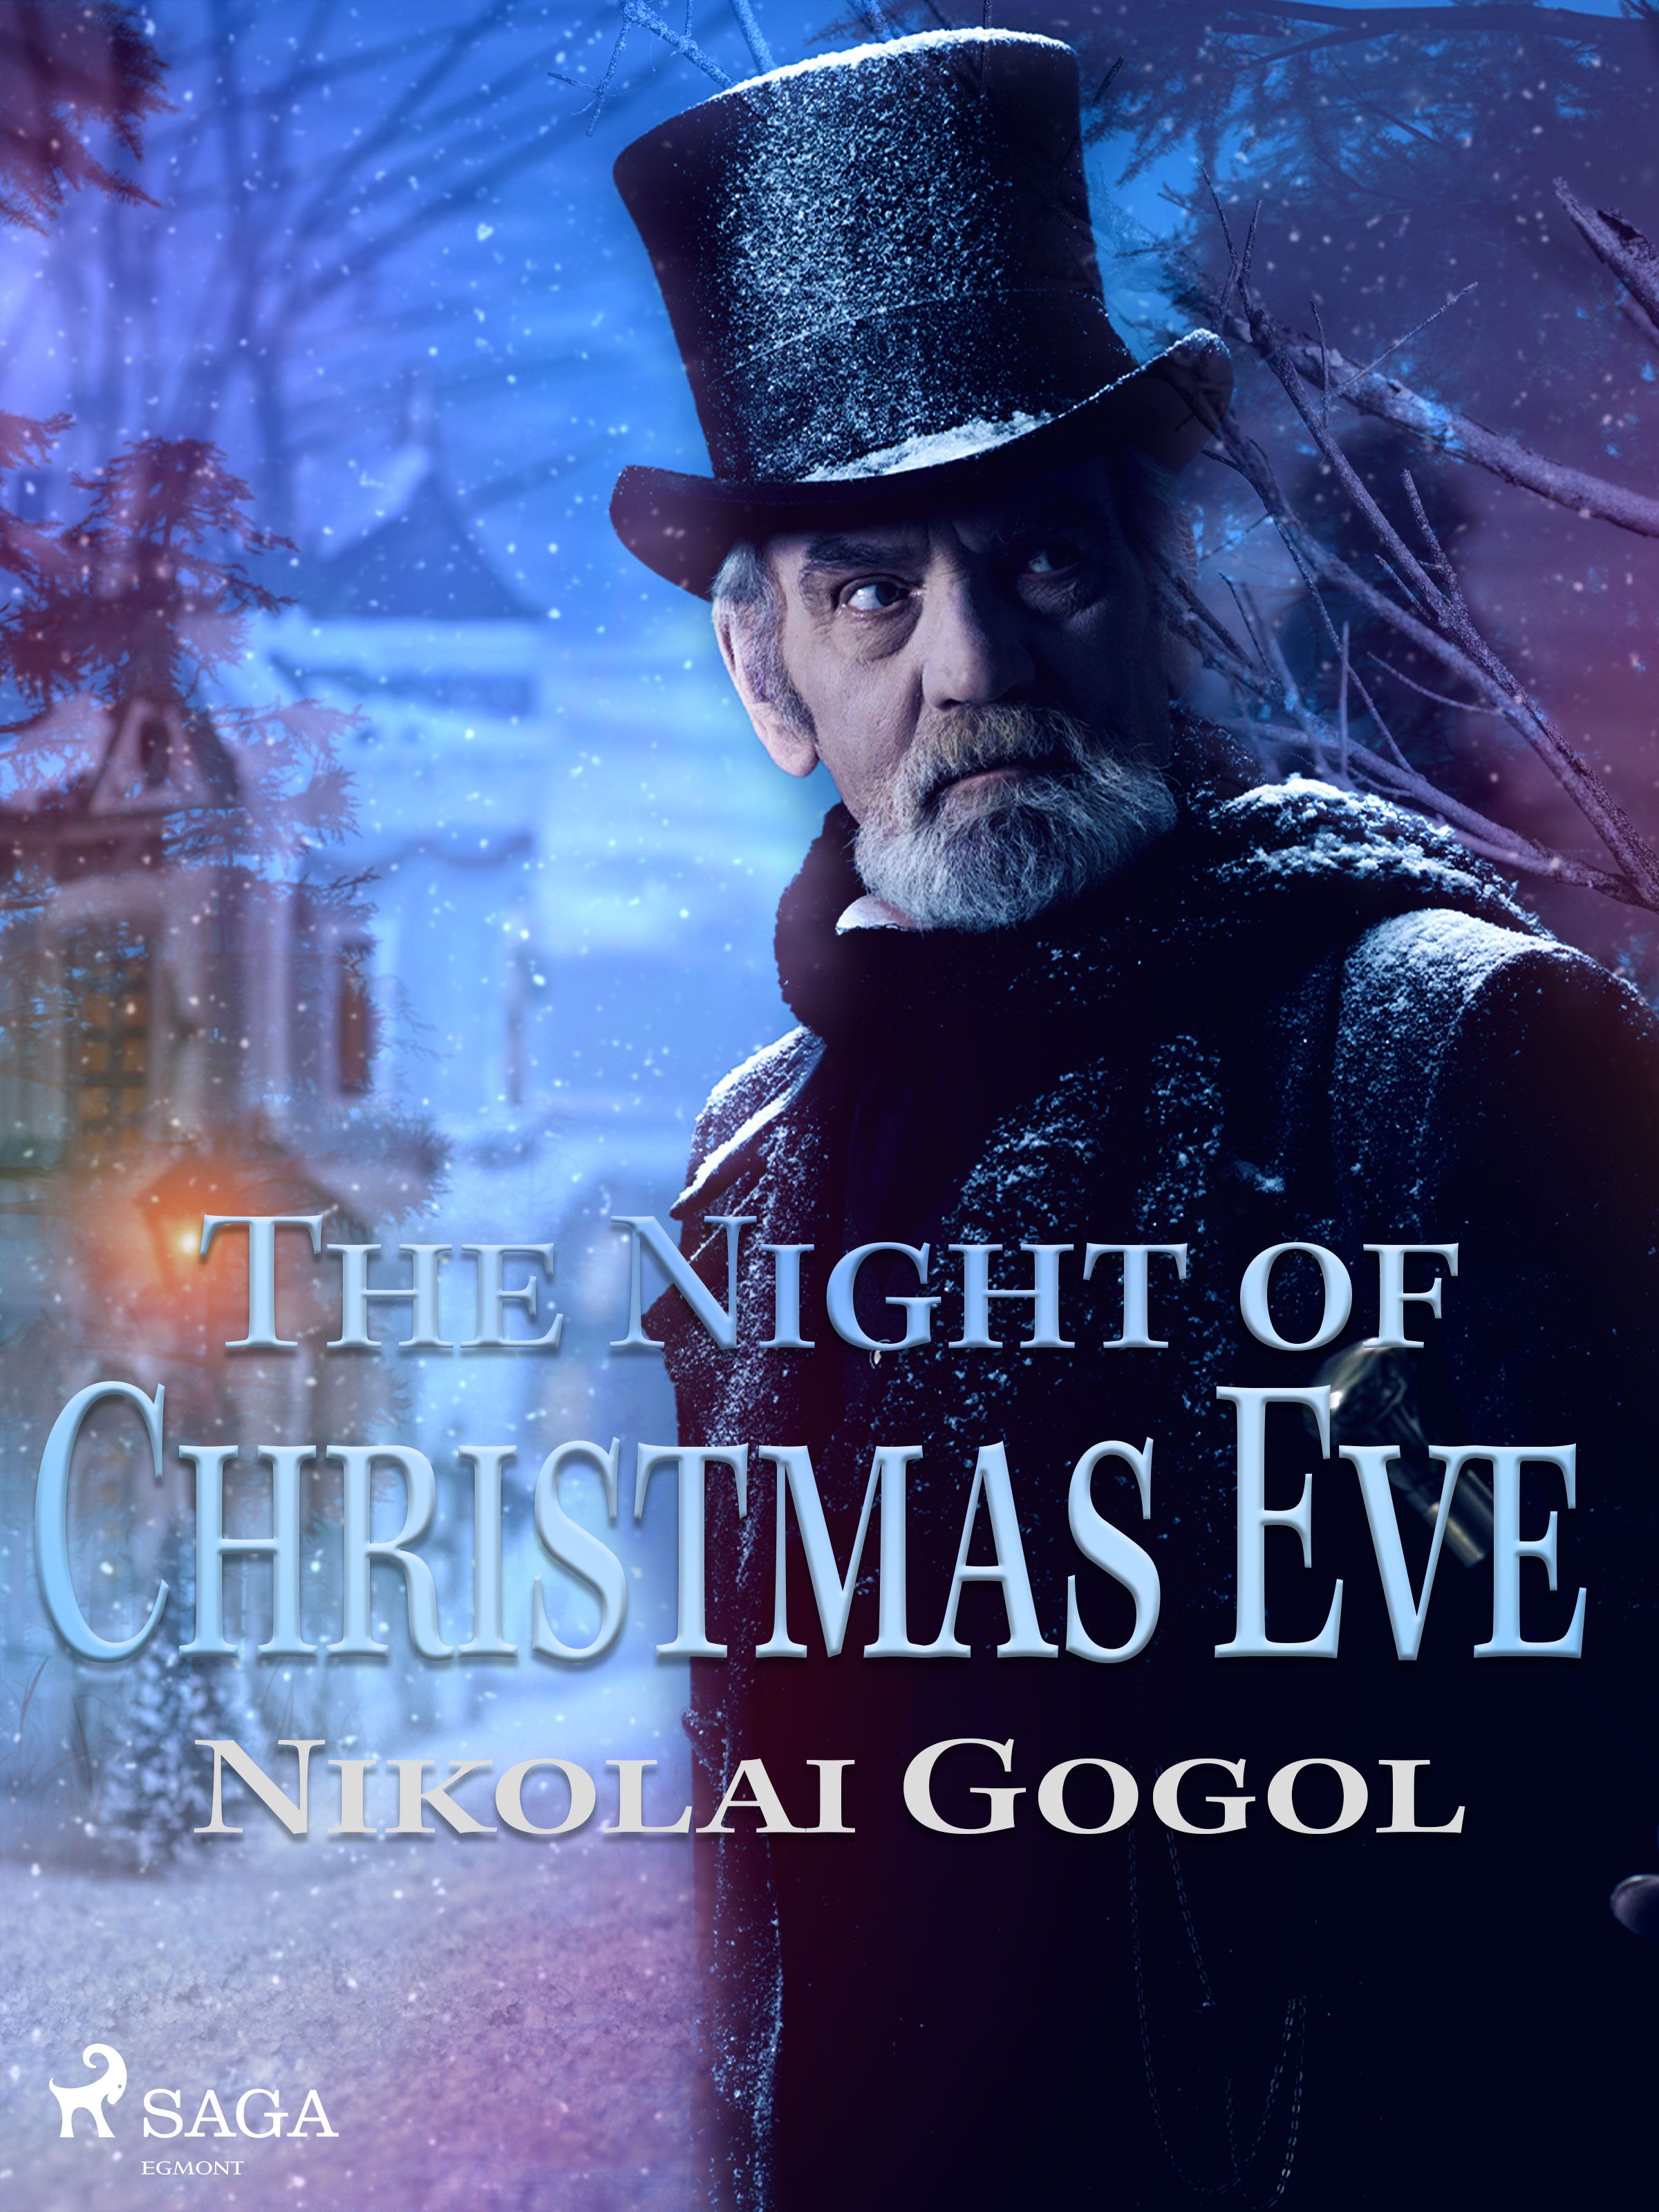 The Night of Christmas Eve, e-bok av Nikolai Gogol